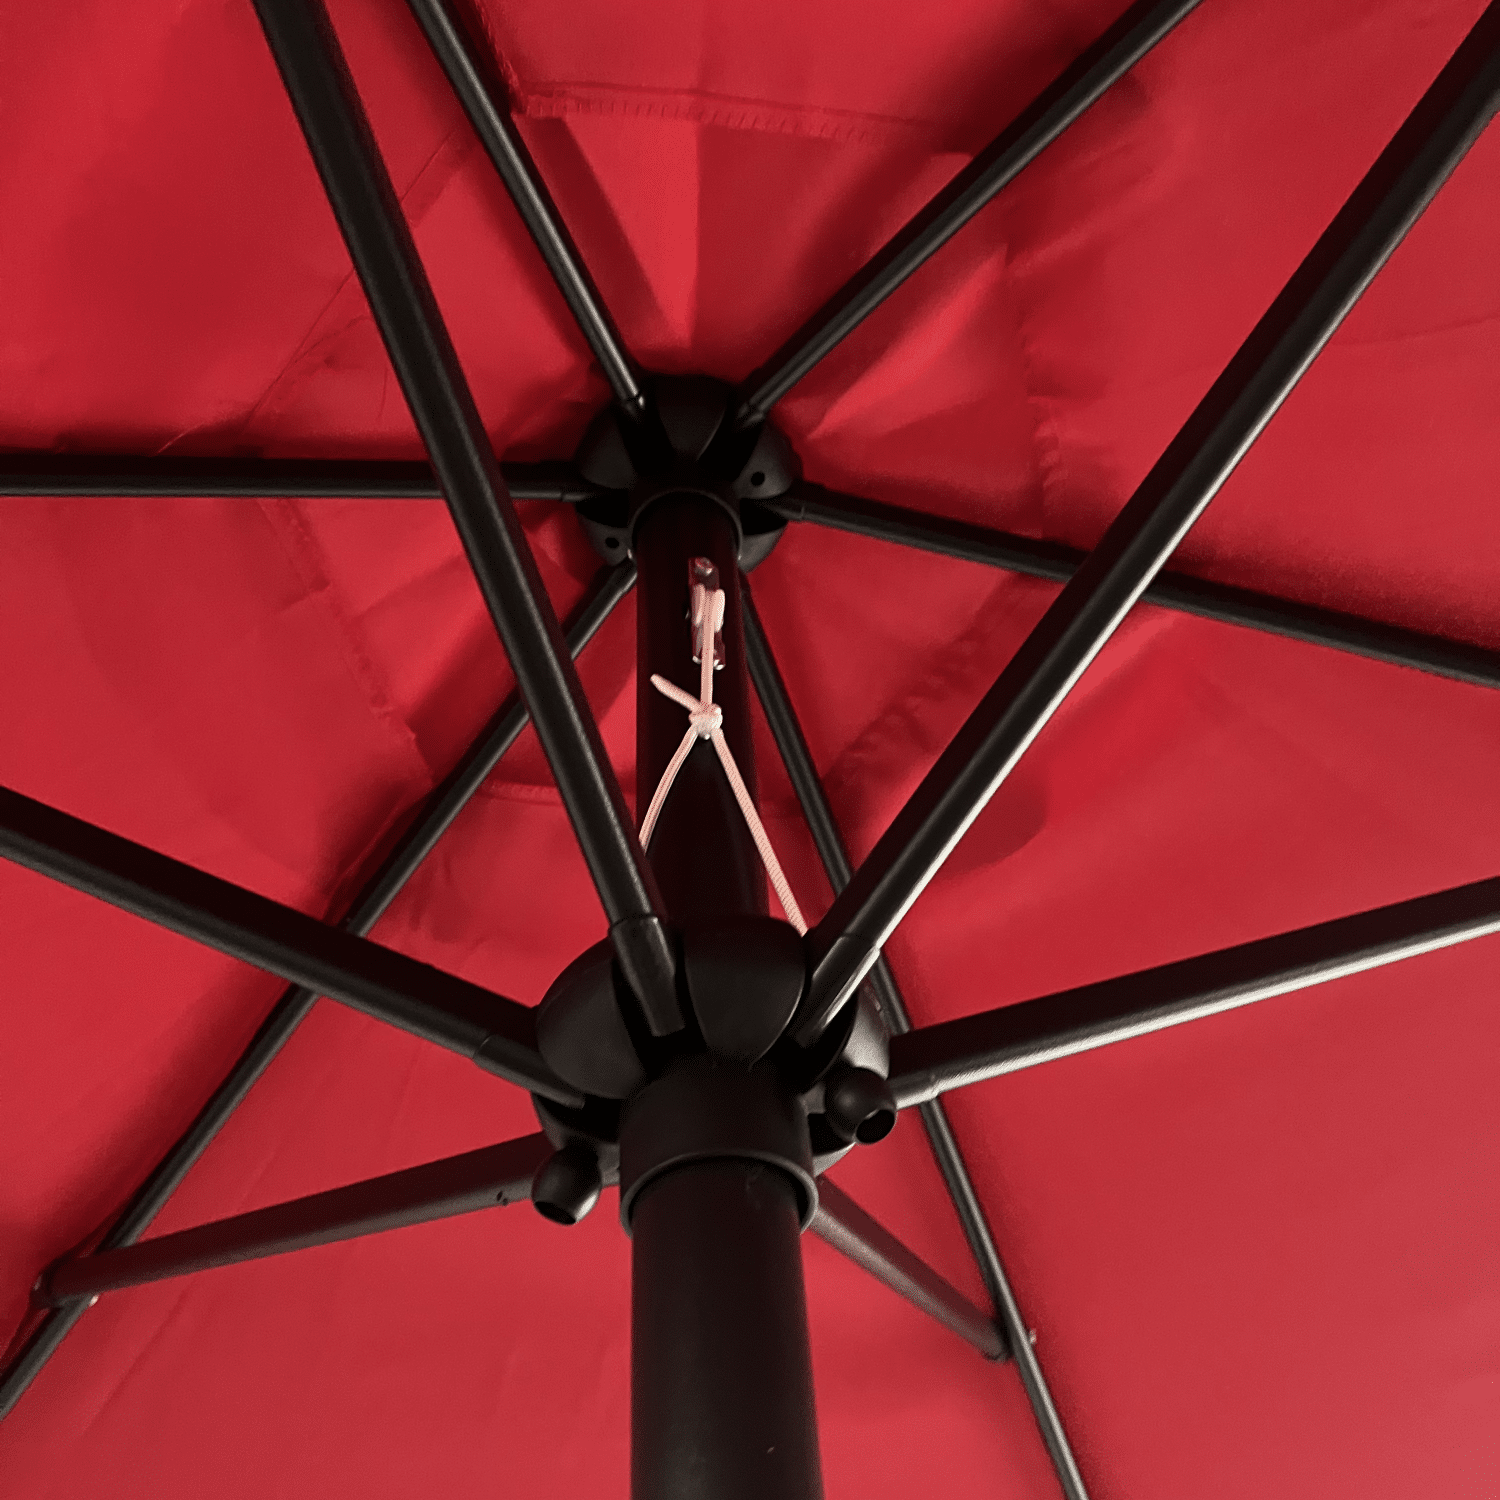 Parasol droit HAPUNA rond 2,70m de diamètre rouge